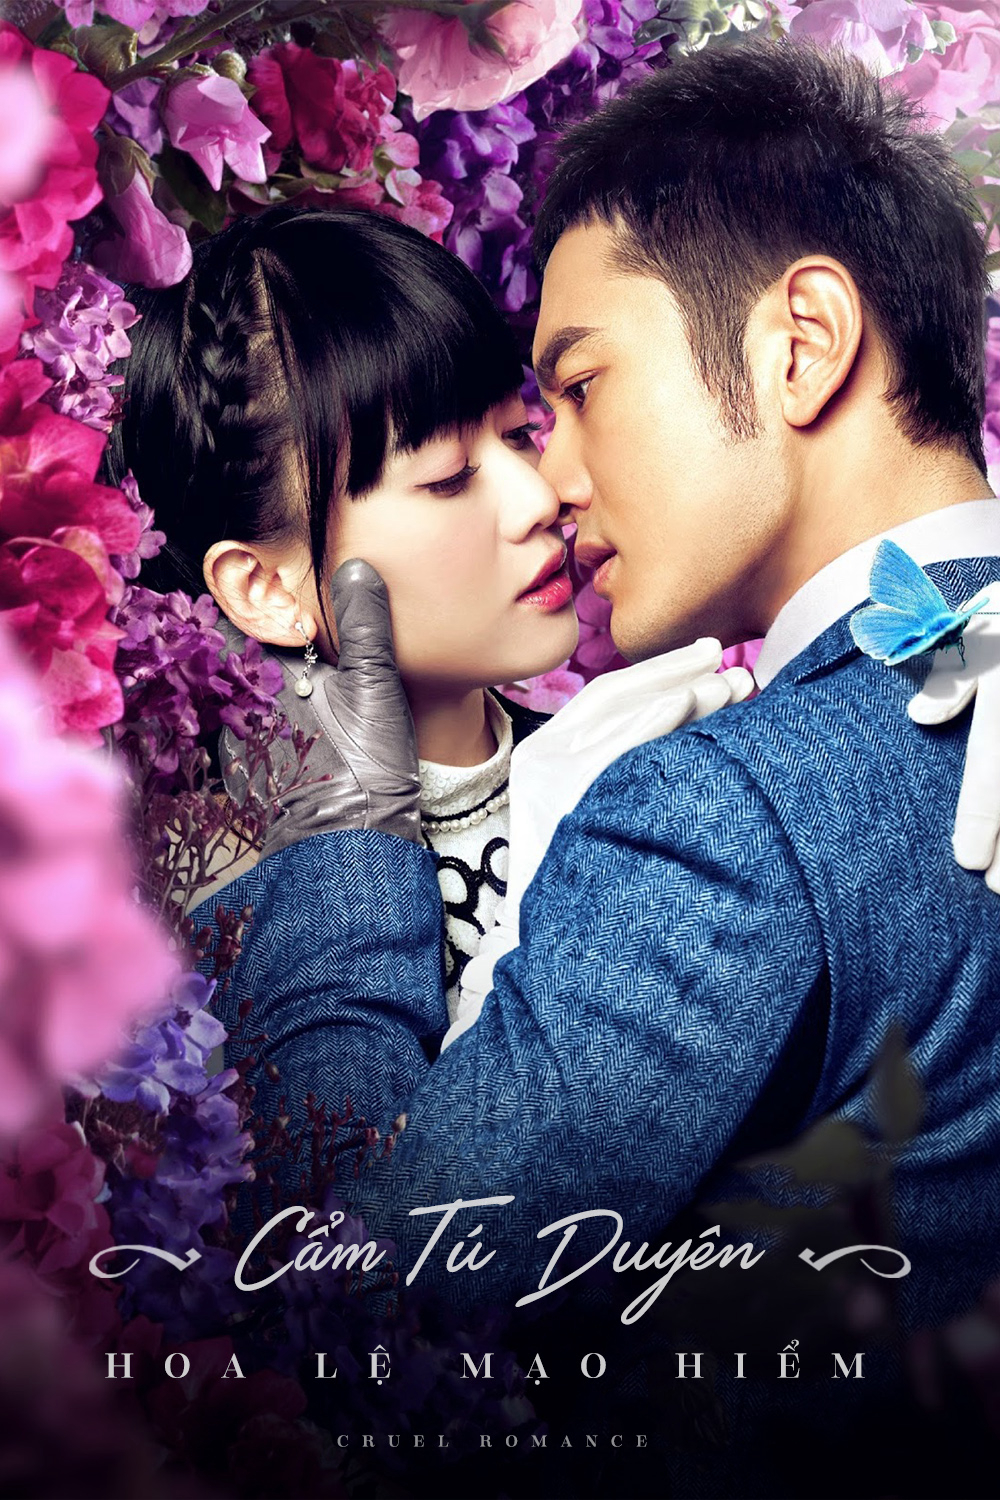 Poster Phim Cẩm Tú Duyên Hoa Lệ Mạo Hiểm (Cruel Romance)